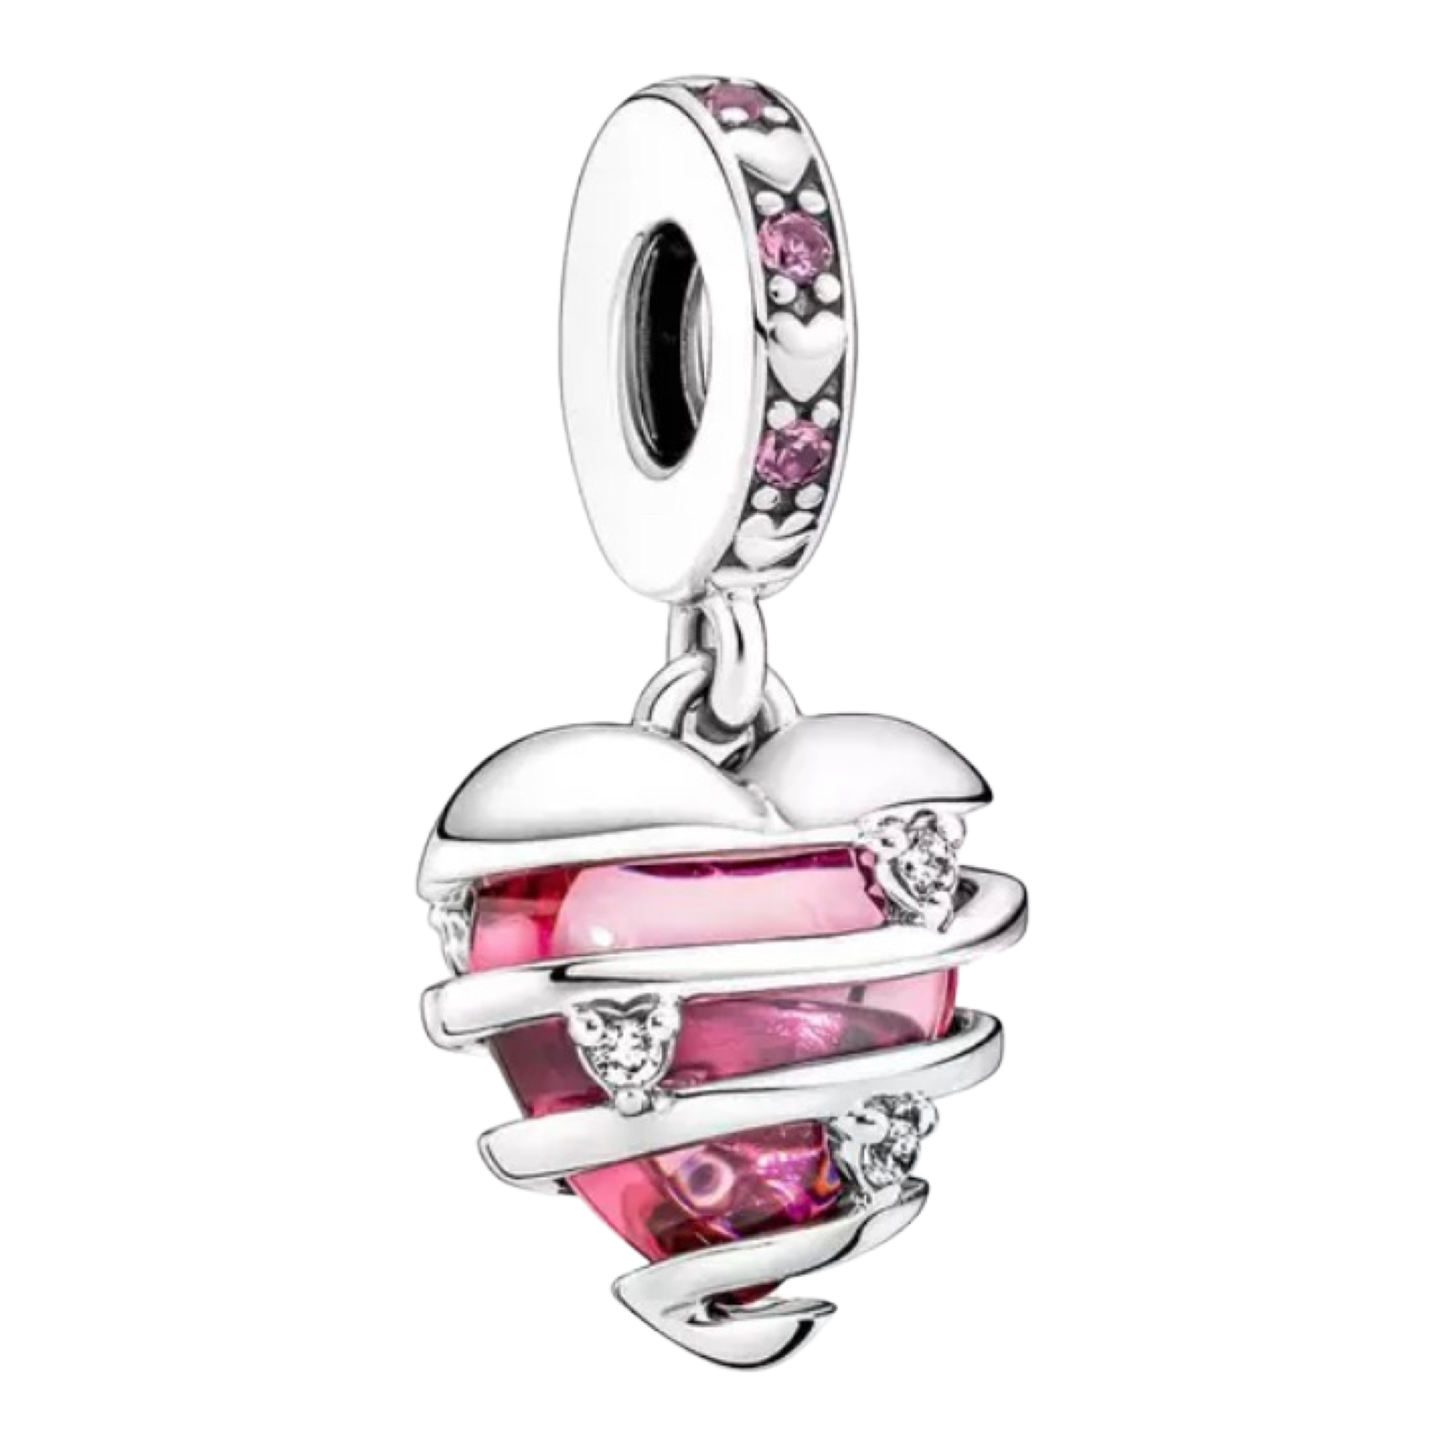 Charms Fit Pandora Bracelet Necklace for Nurses Doctors Healthcare Workers